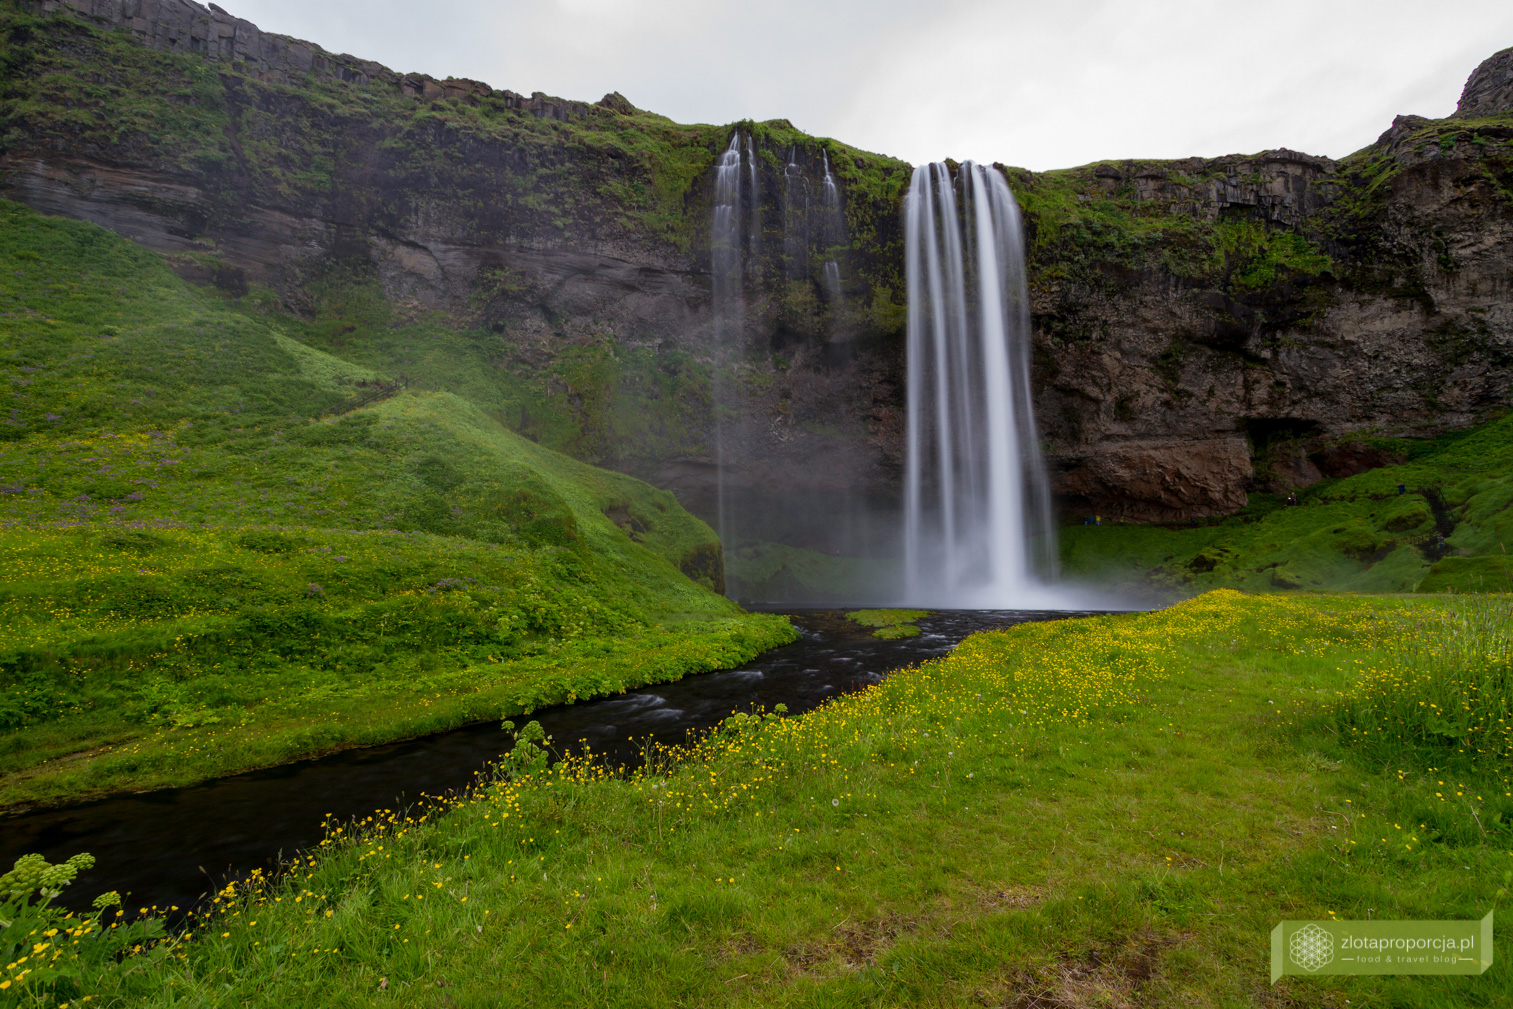 wodospad Seljalandsfoss, Południowo-zachodnia Islandia, Islandia, Islandia atrakcje, wodospady na Islandii, Islandia ciekawe miejsca